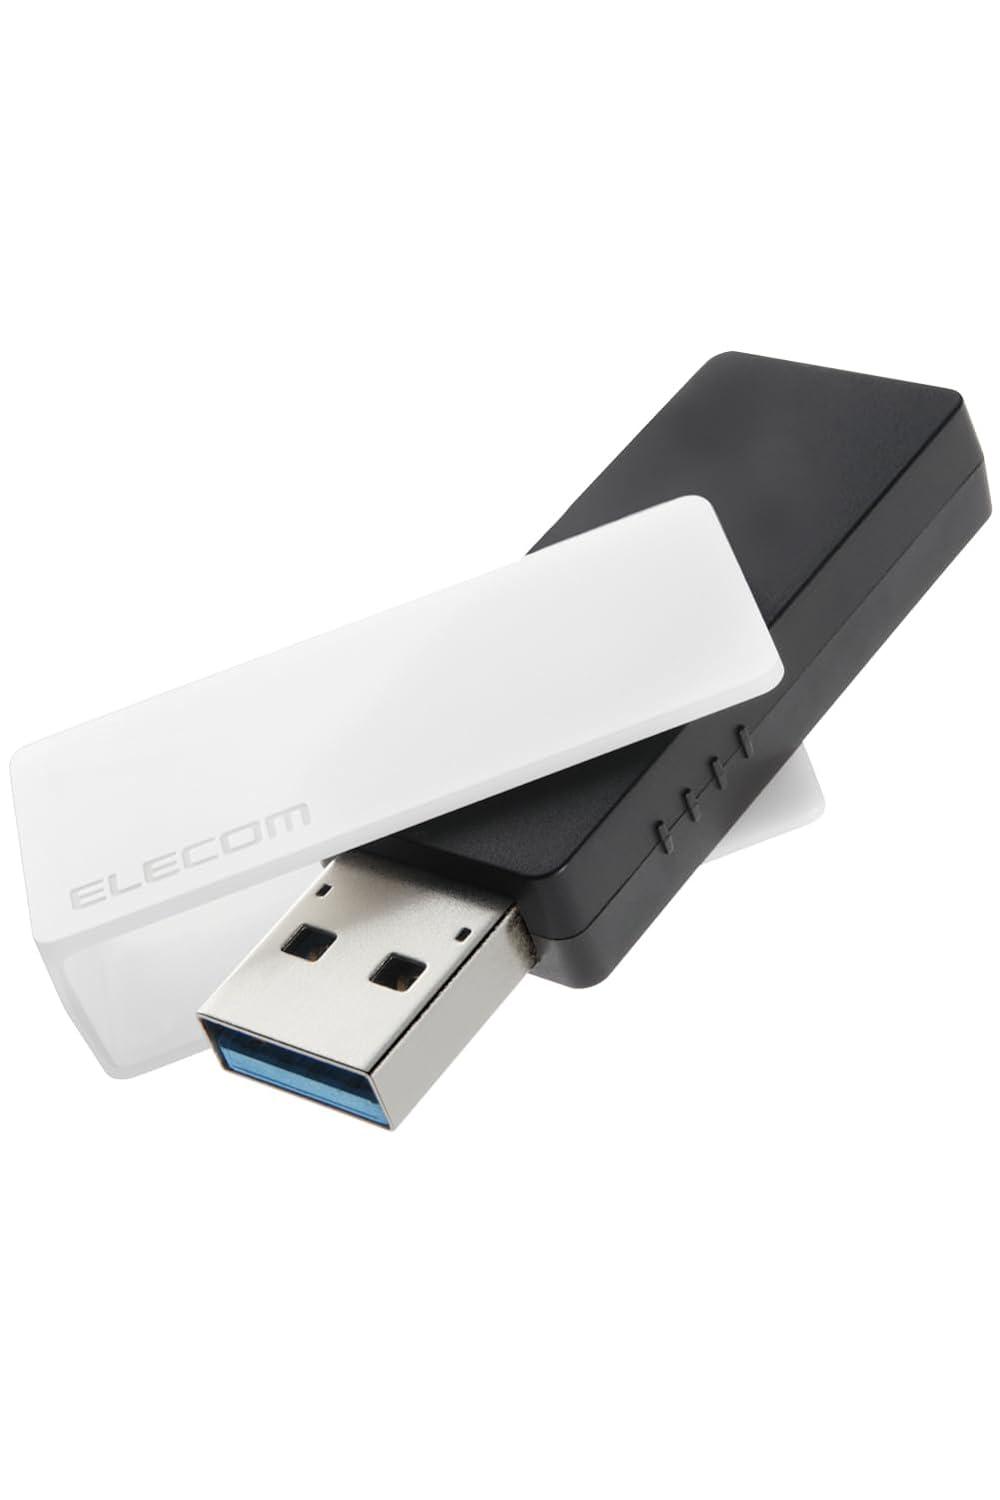 USB/USB3.2(Gen1)/USB3.0Ή/]/32GB/zCg(MF-RMU3B032GWH) ELECOM GR